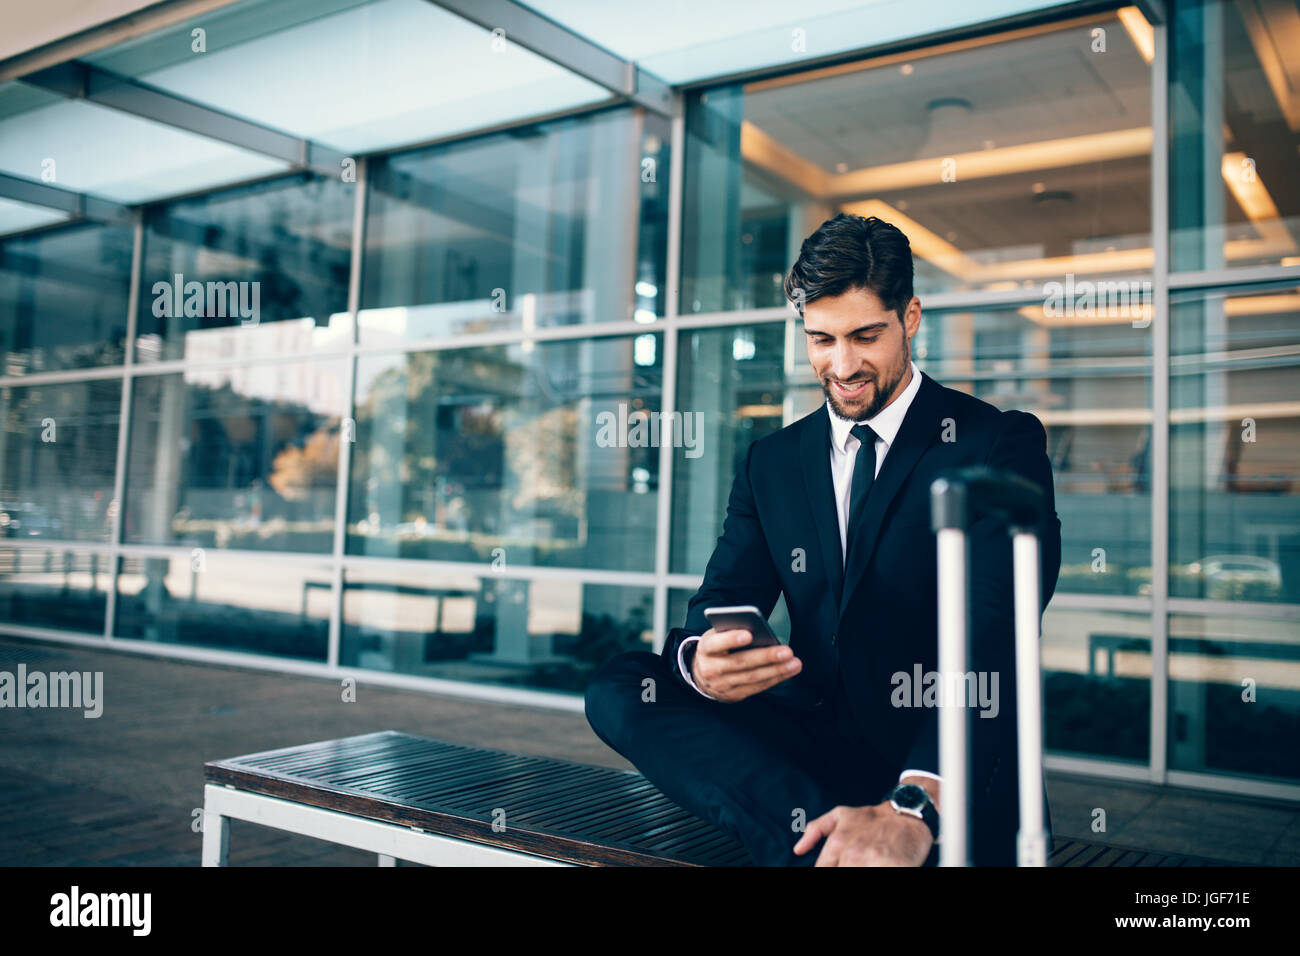 Empresario joven sentado en un banco con la maleta y el uso de teléfonos inteligentes. Empresario del Cáucaso a la terminal del aeropuerto esperando la celebración de un teléfono móvil. Foto de stock